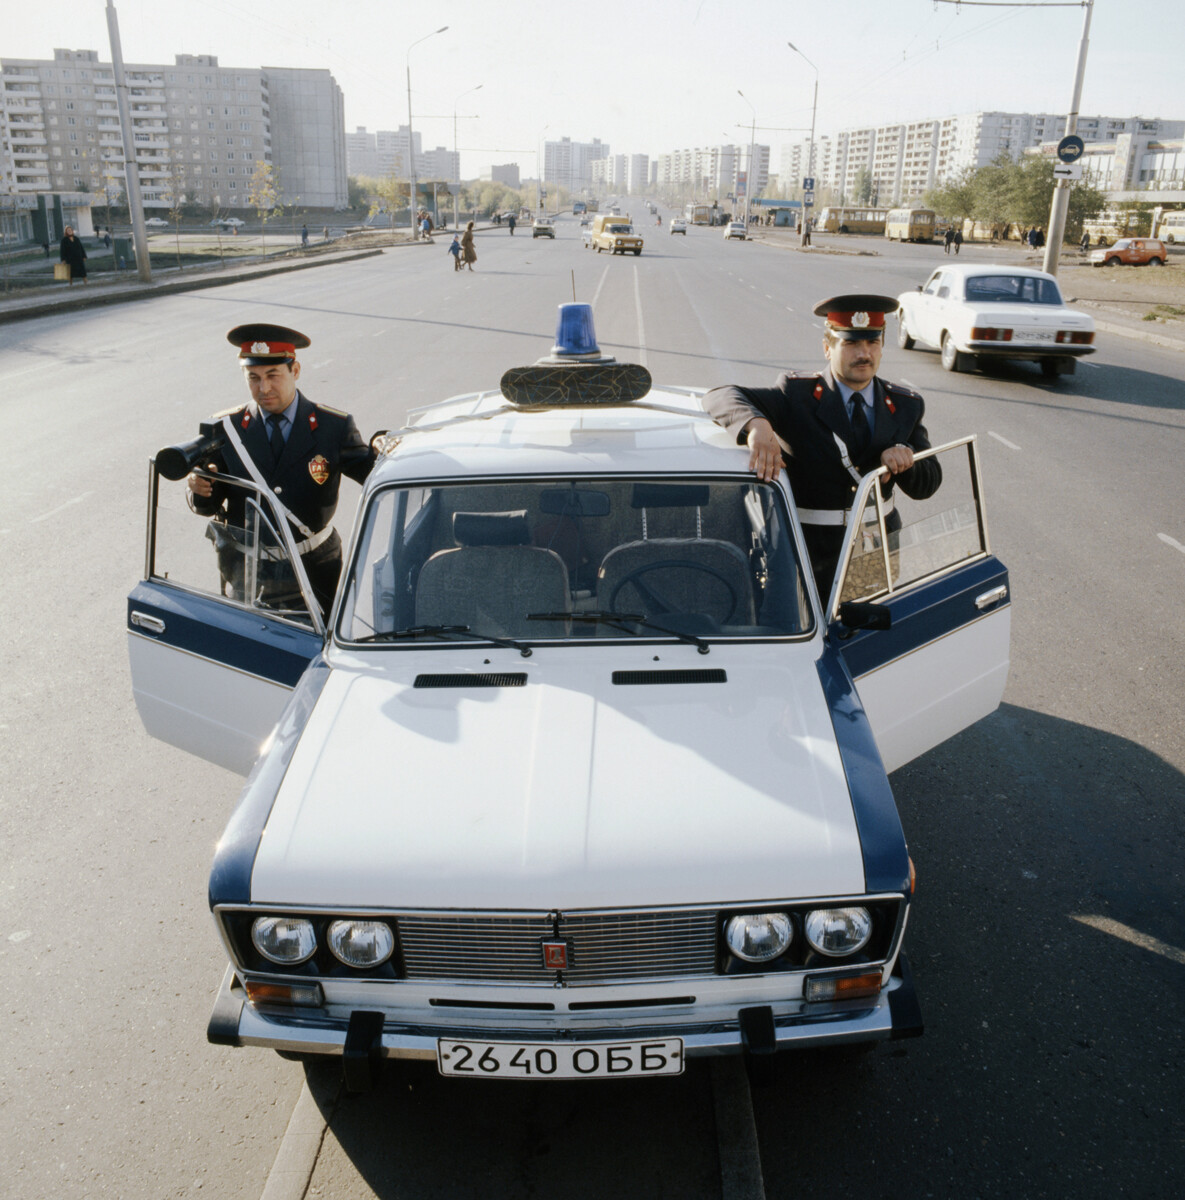 Патрола саобраћајне полиције, Оренбург, СССР,  21. новембар 1989.